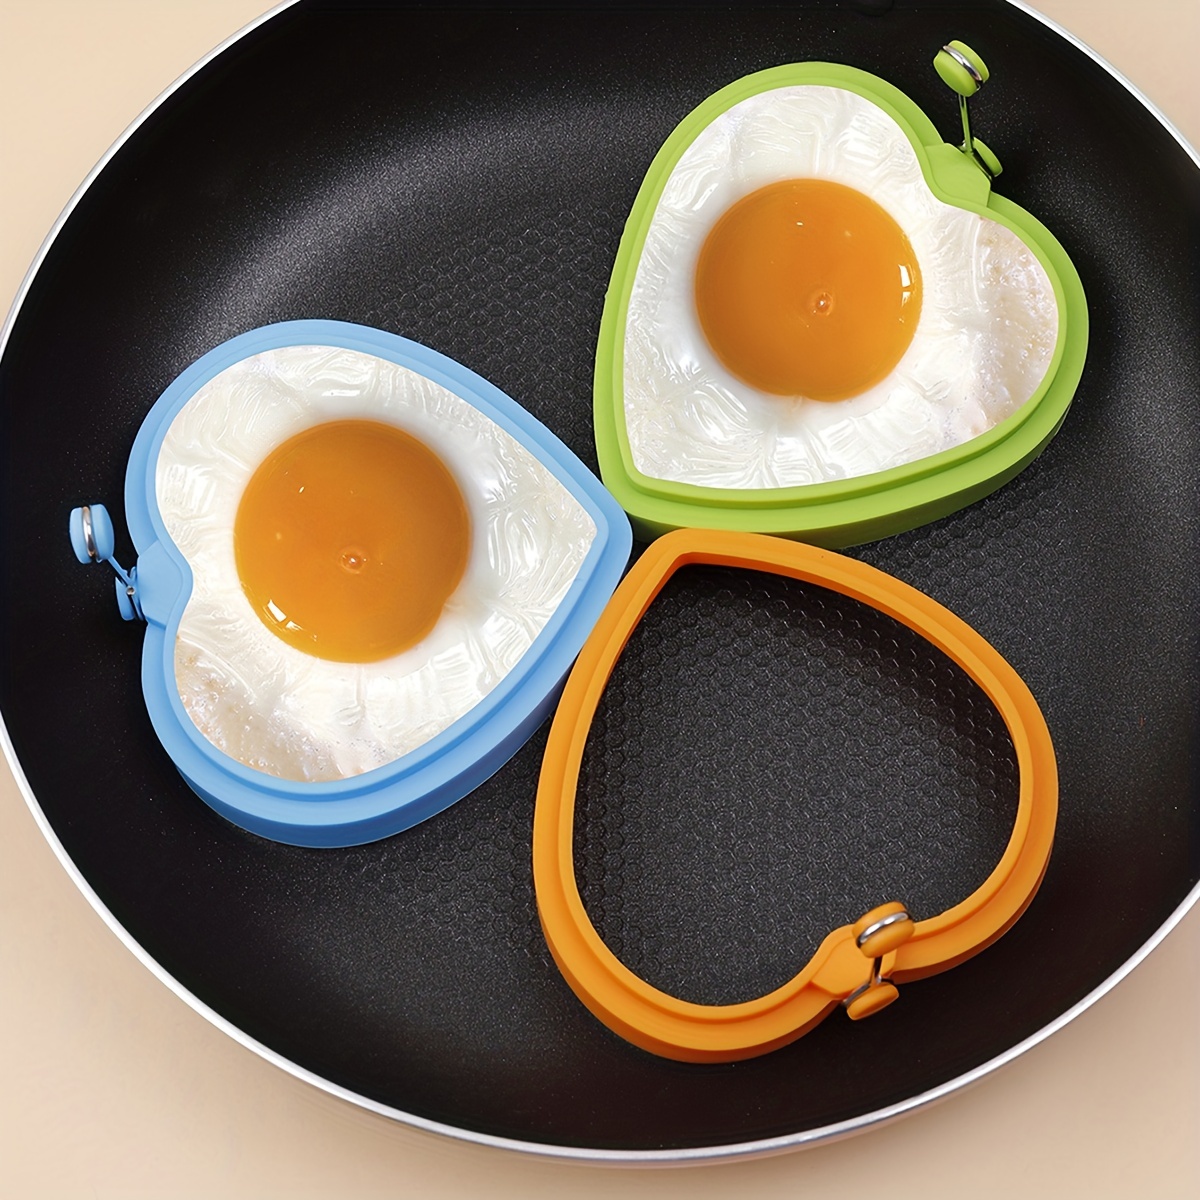 Bricolage petit déjeuner rond anneau en silicone oeuf moule oeuf au plat  crêpe anneau antiadhésif cuisine cuisson moule (orange)